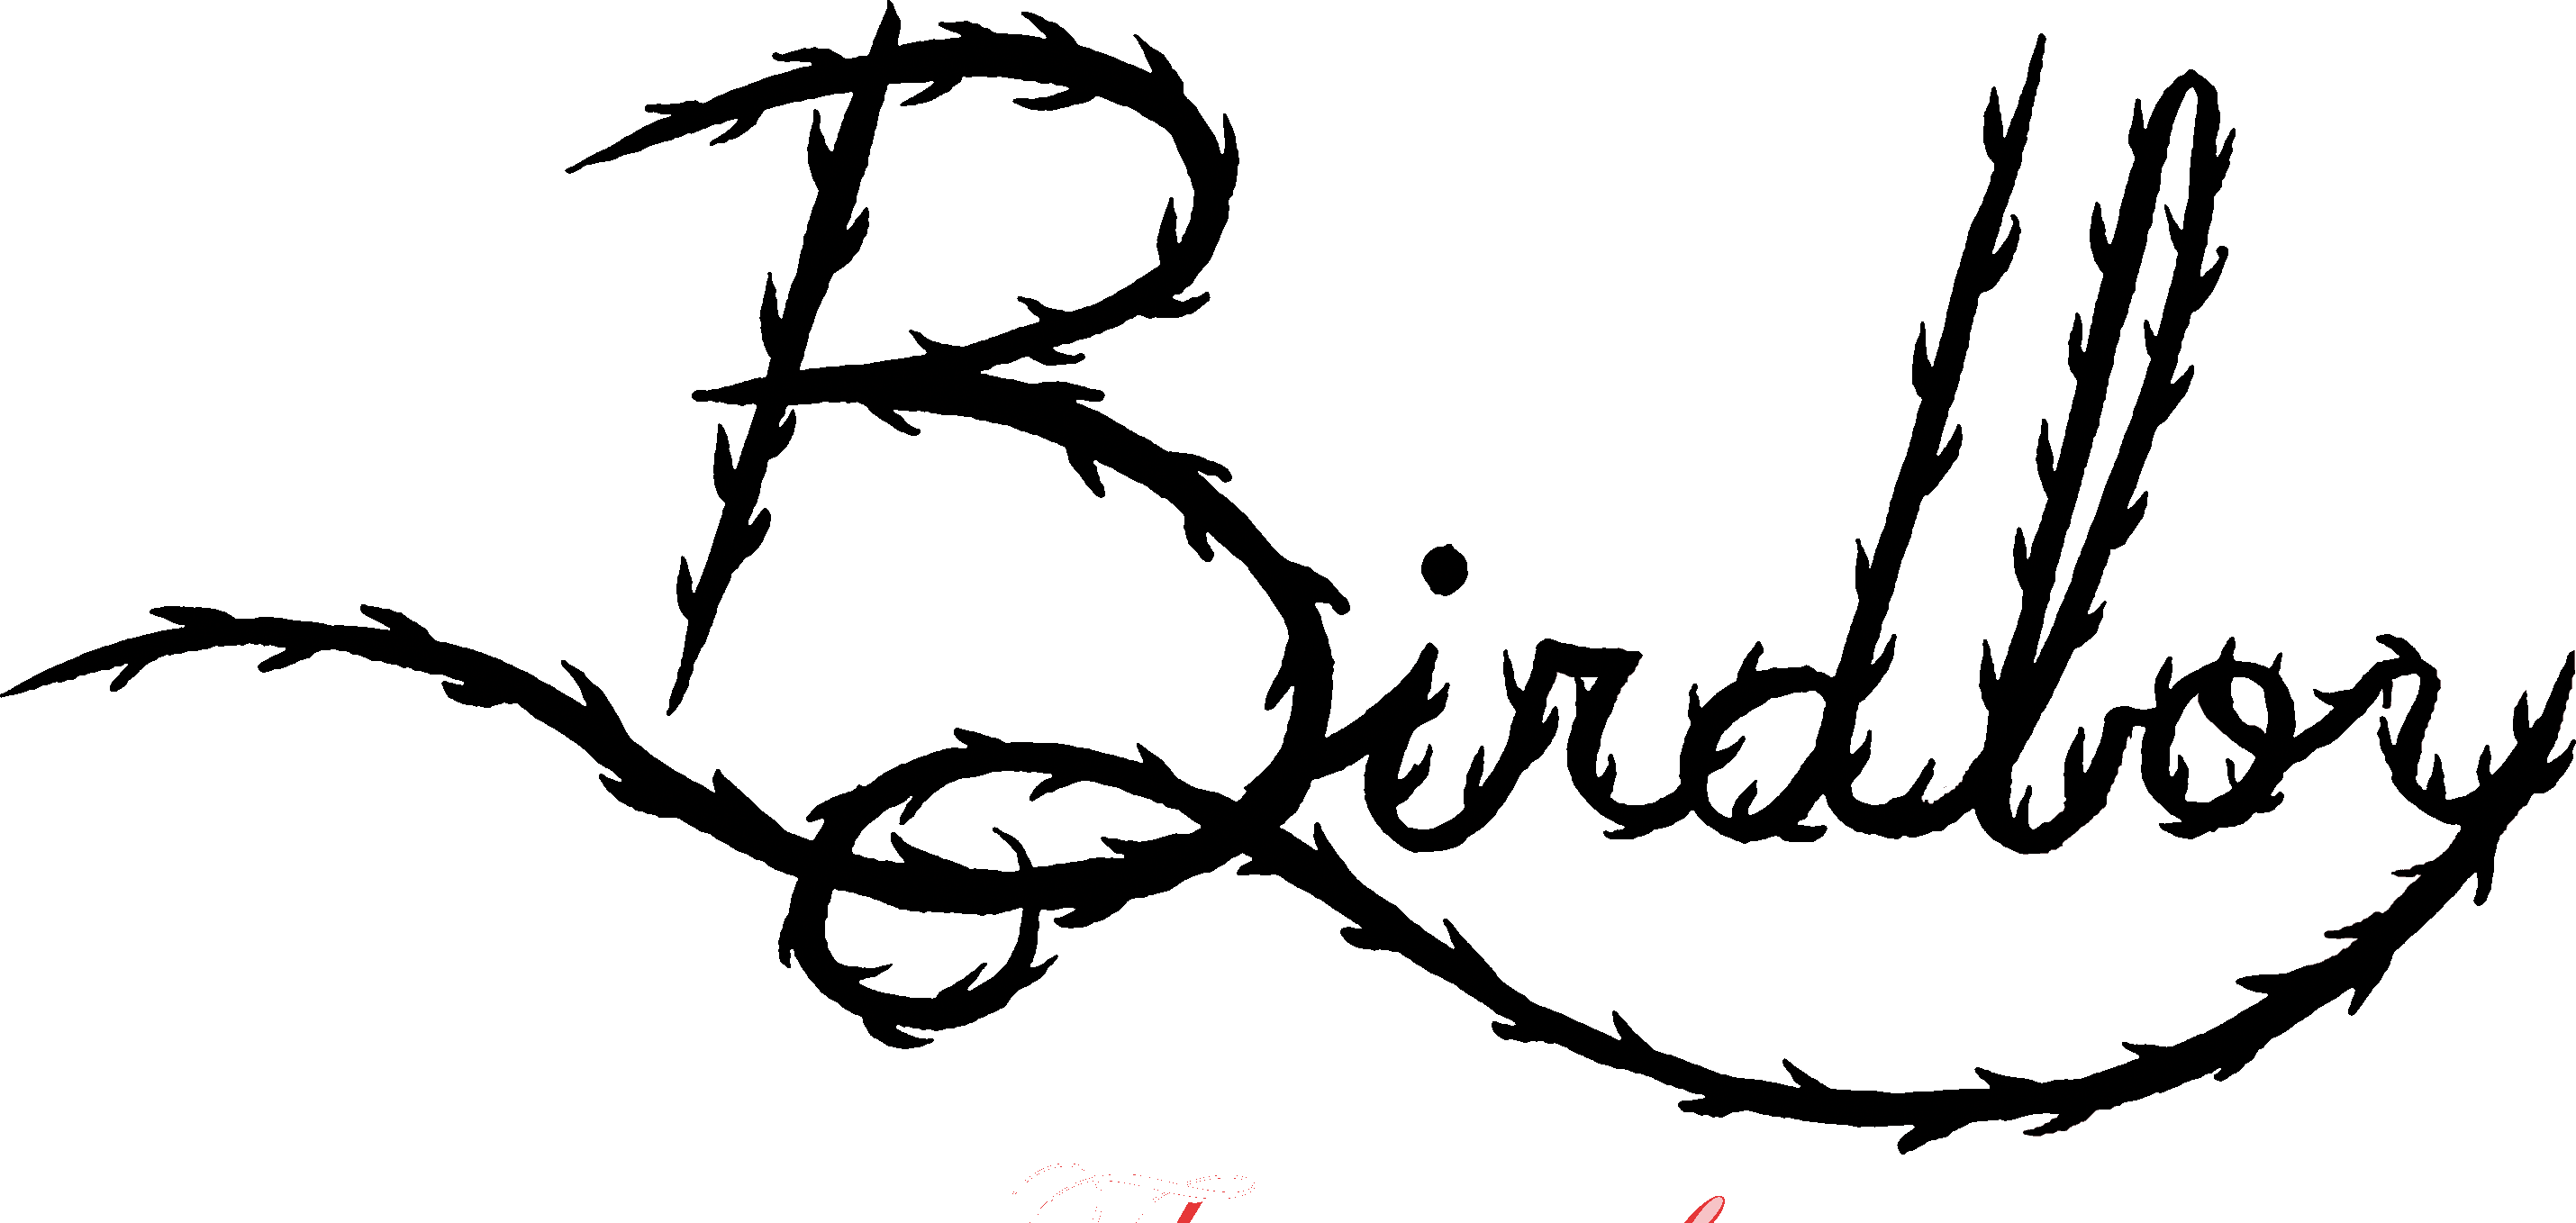 Birdboy logo